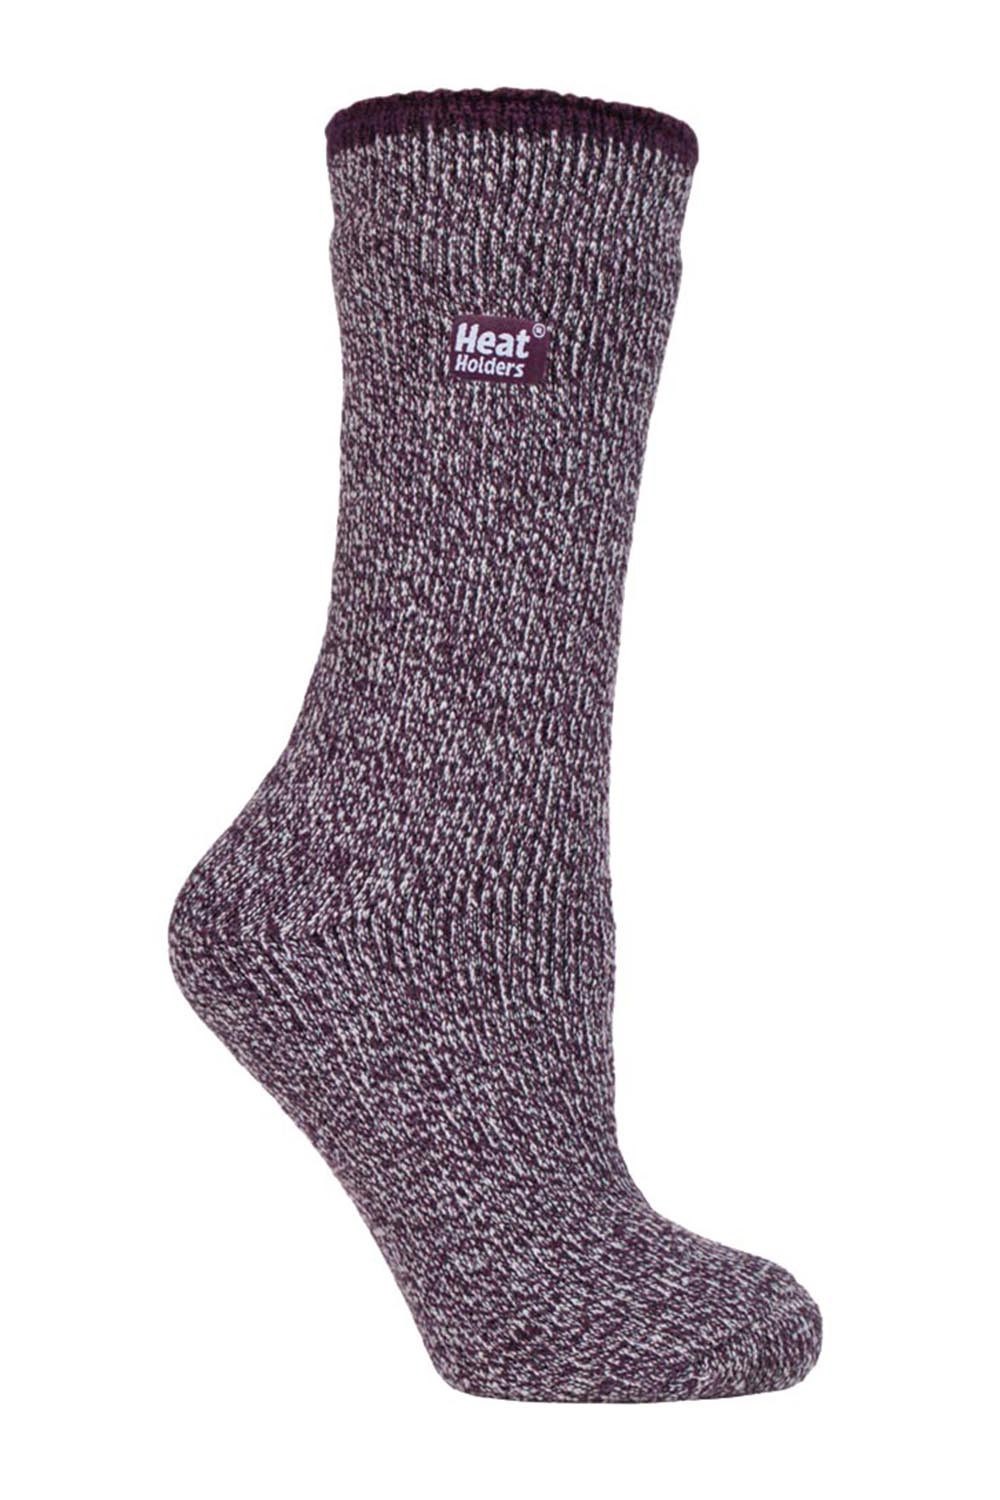 Womens Knee High Merino Wool Socks -